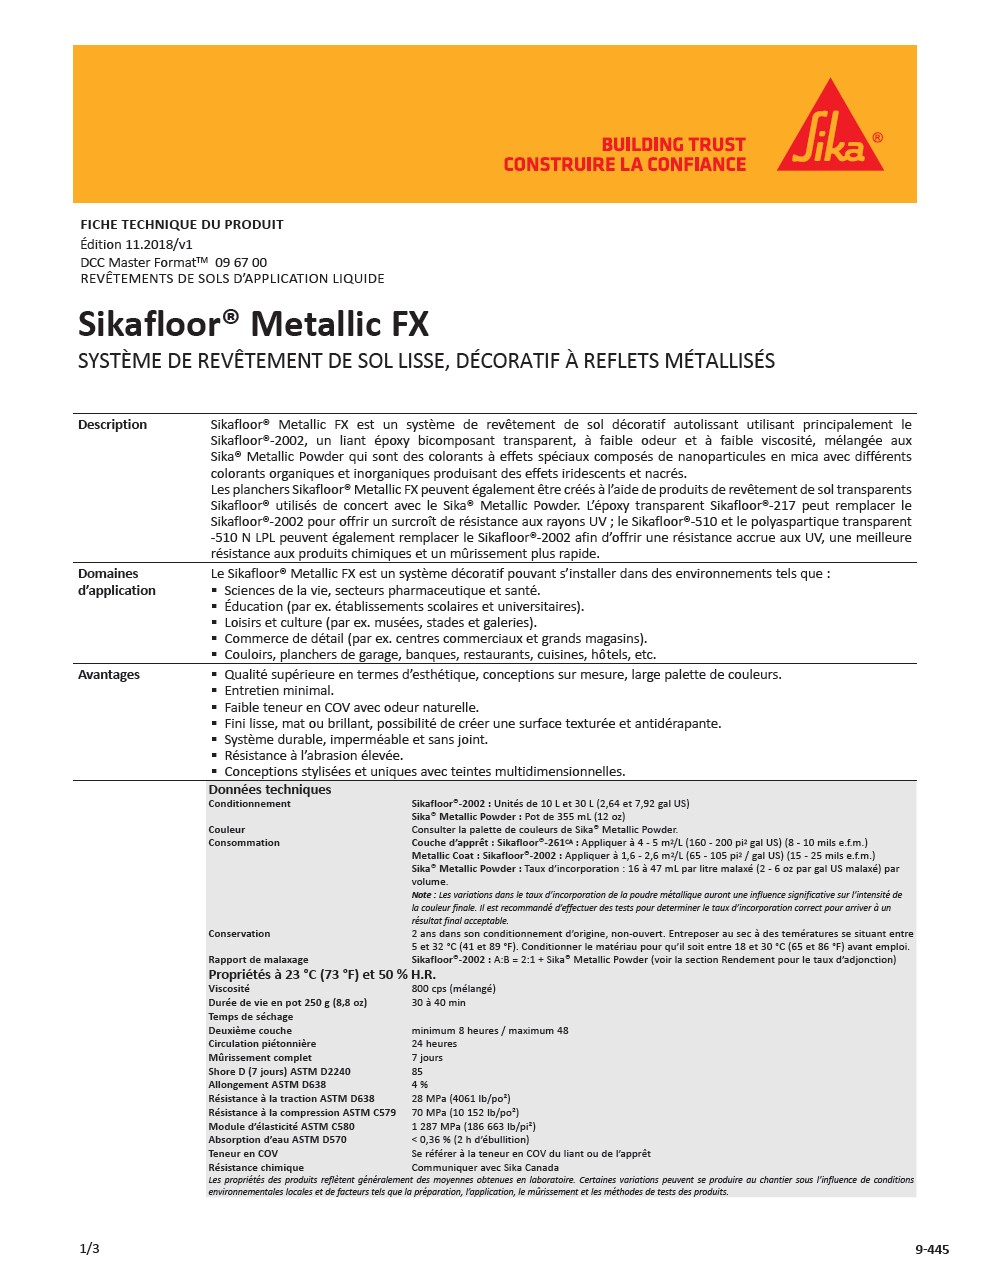 Sikafloor® Metallic FX 